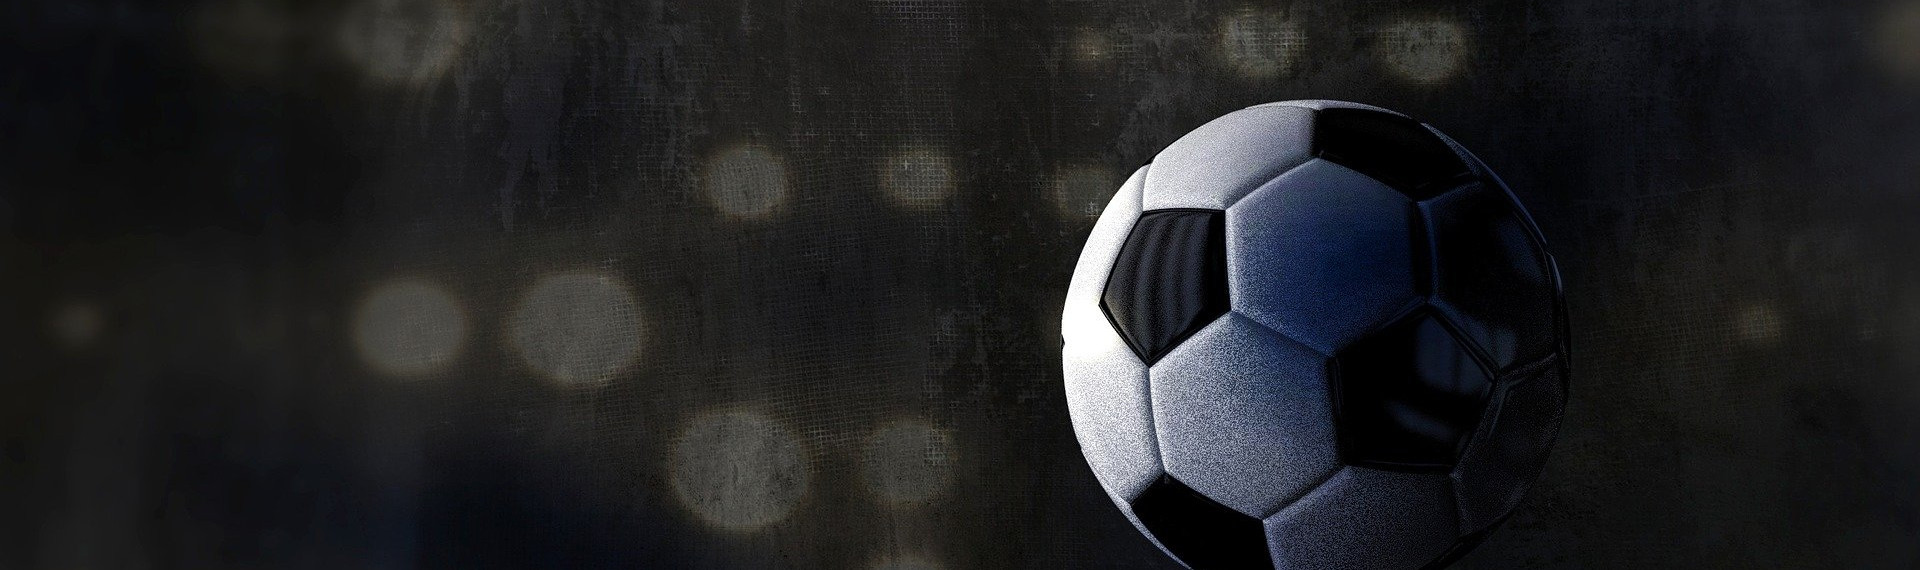 Fußball "5 gegen 5" | Sportliche JGA-Aktivitäten in Brüssel  | Pissup Reisen